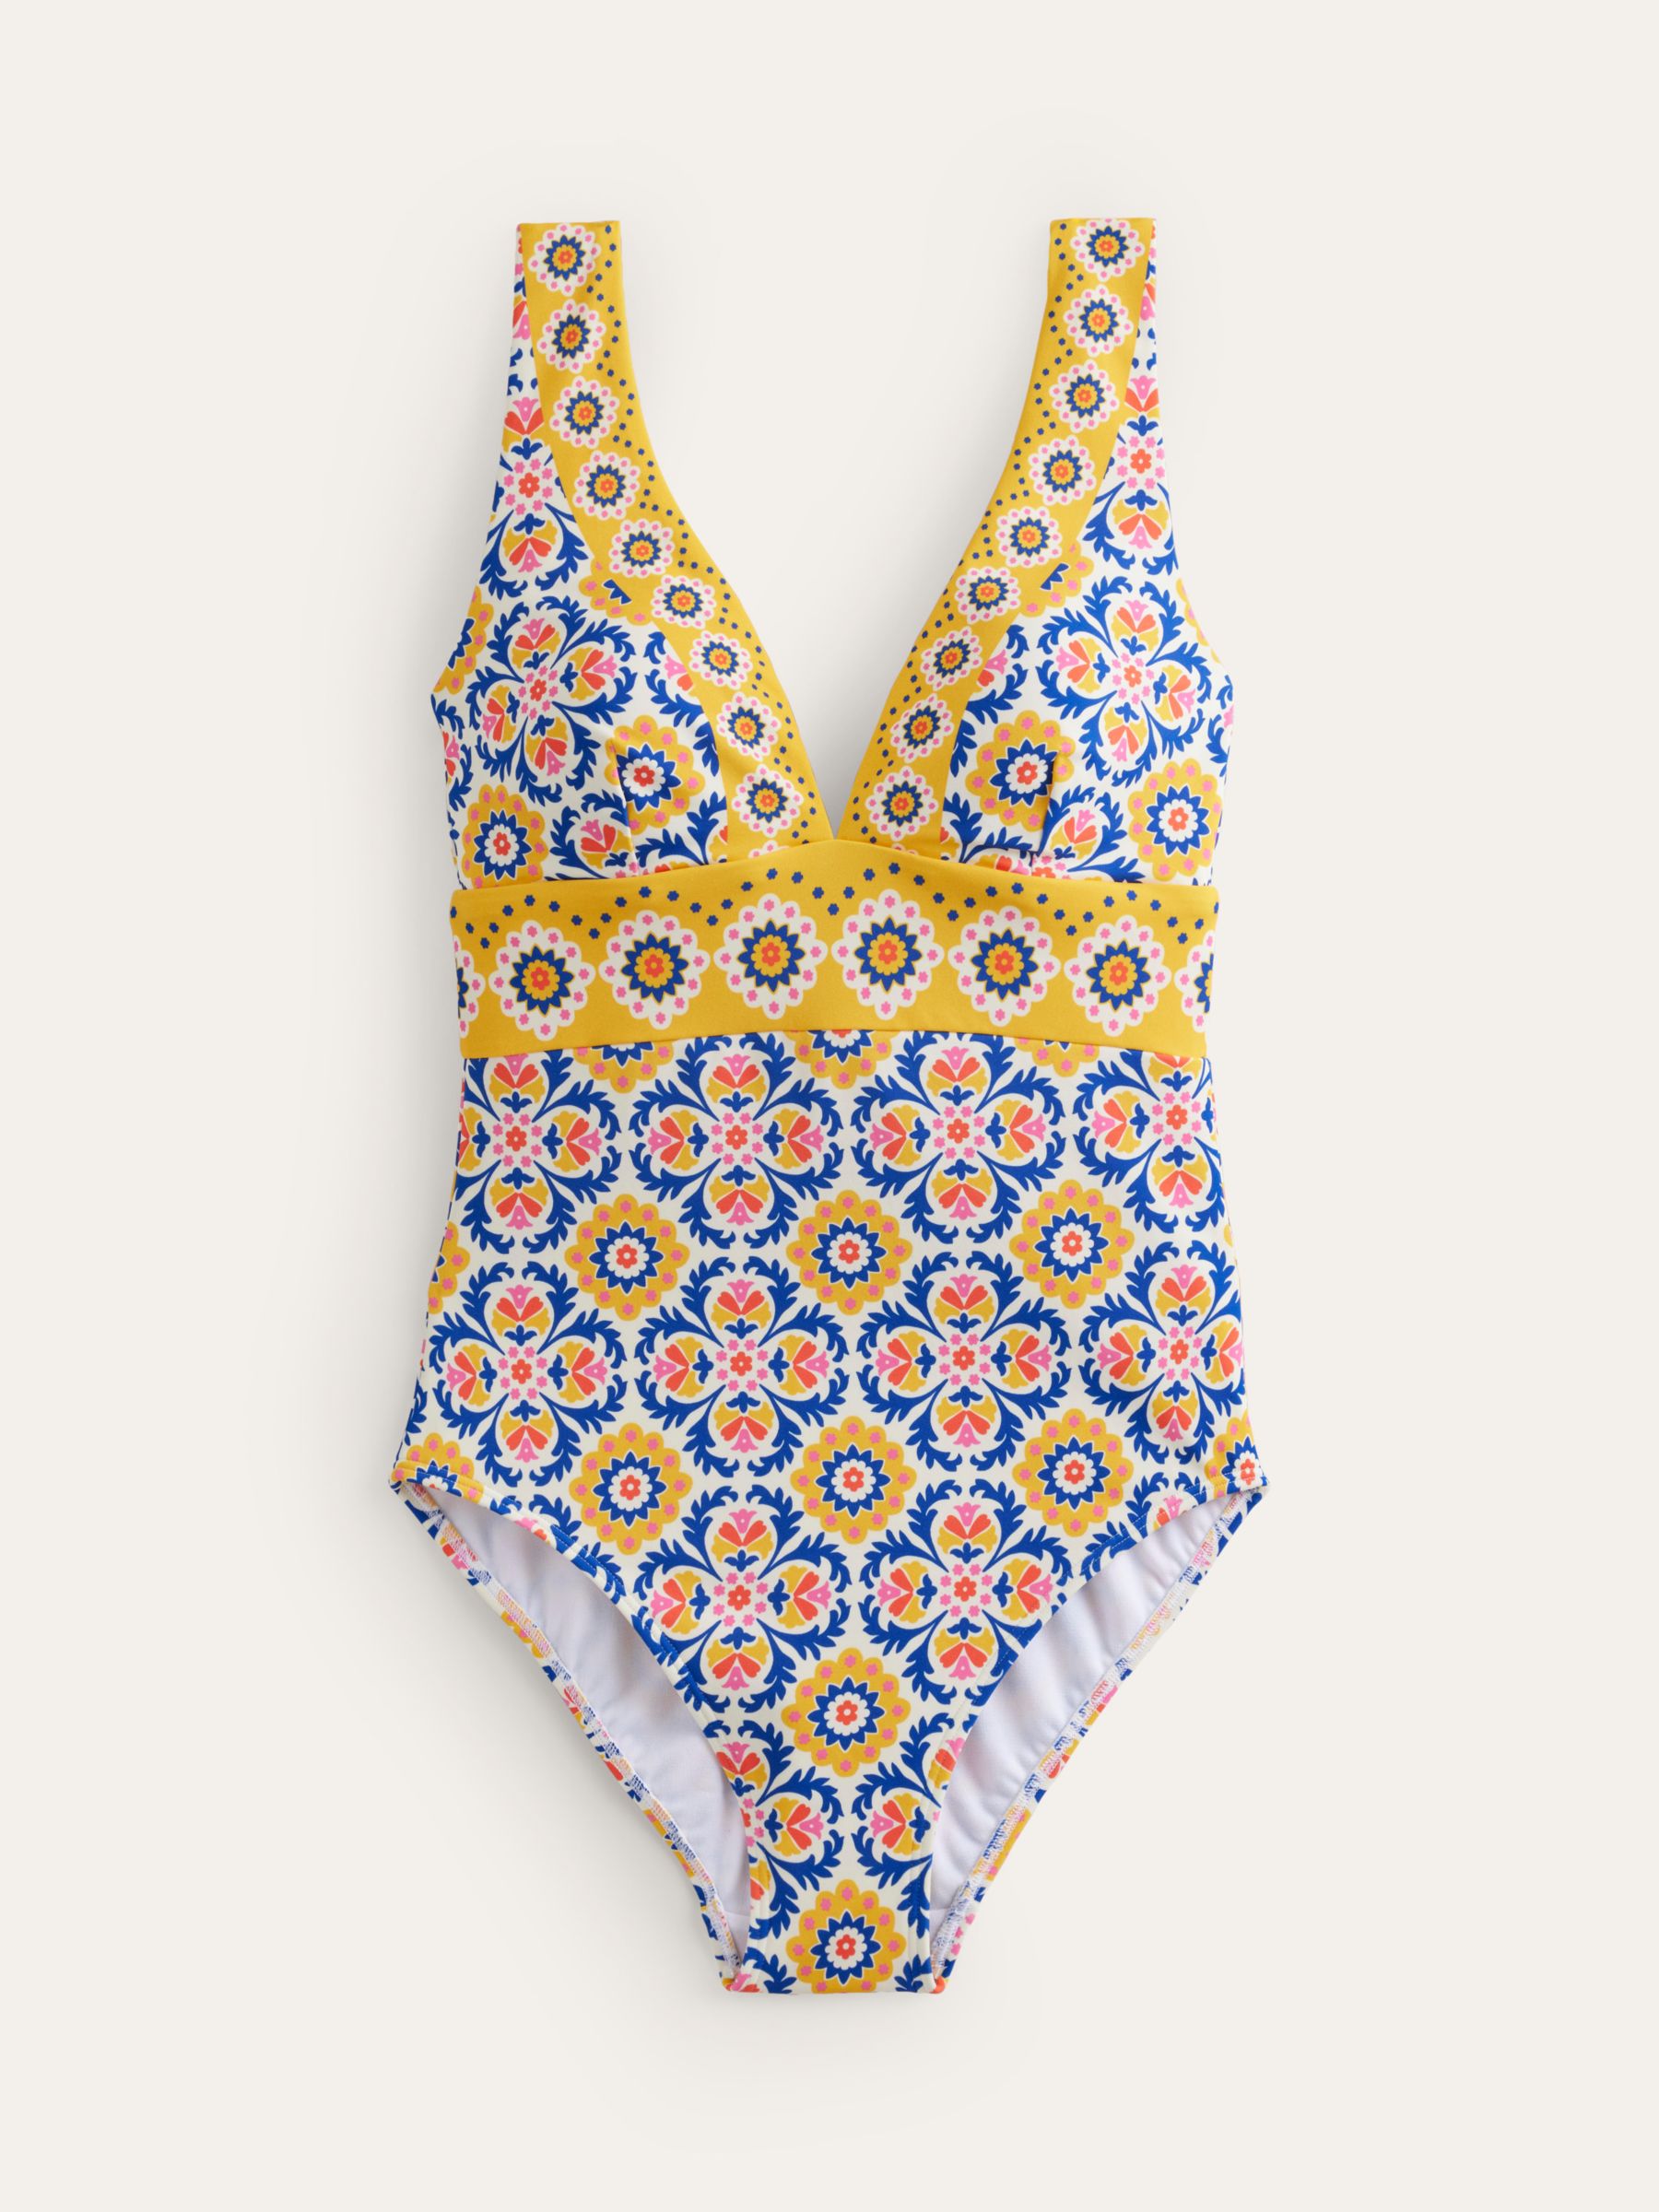 Boden Porto V-Neck Swimsuit, Mosaic Tile, 14